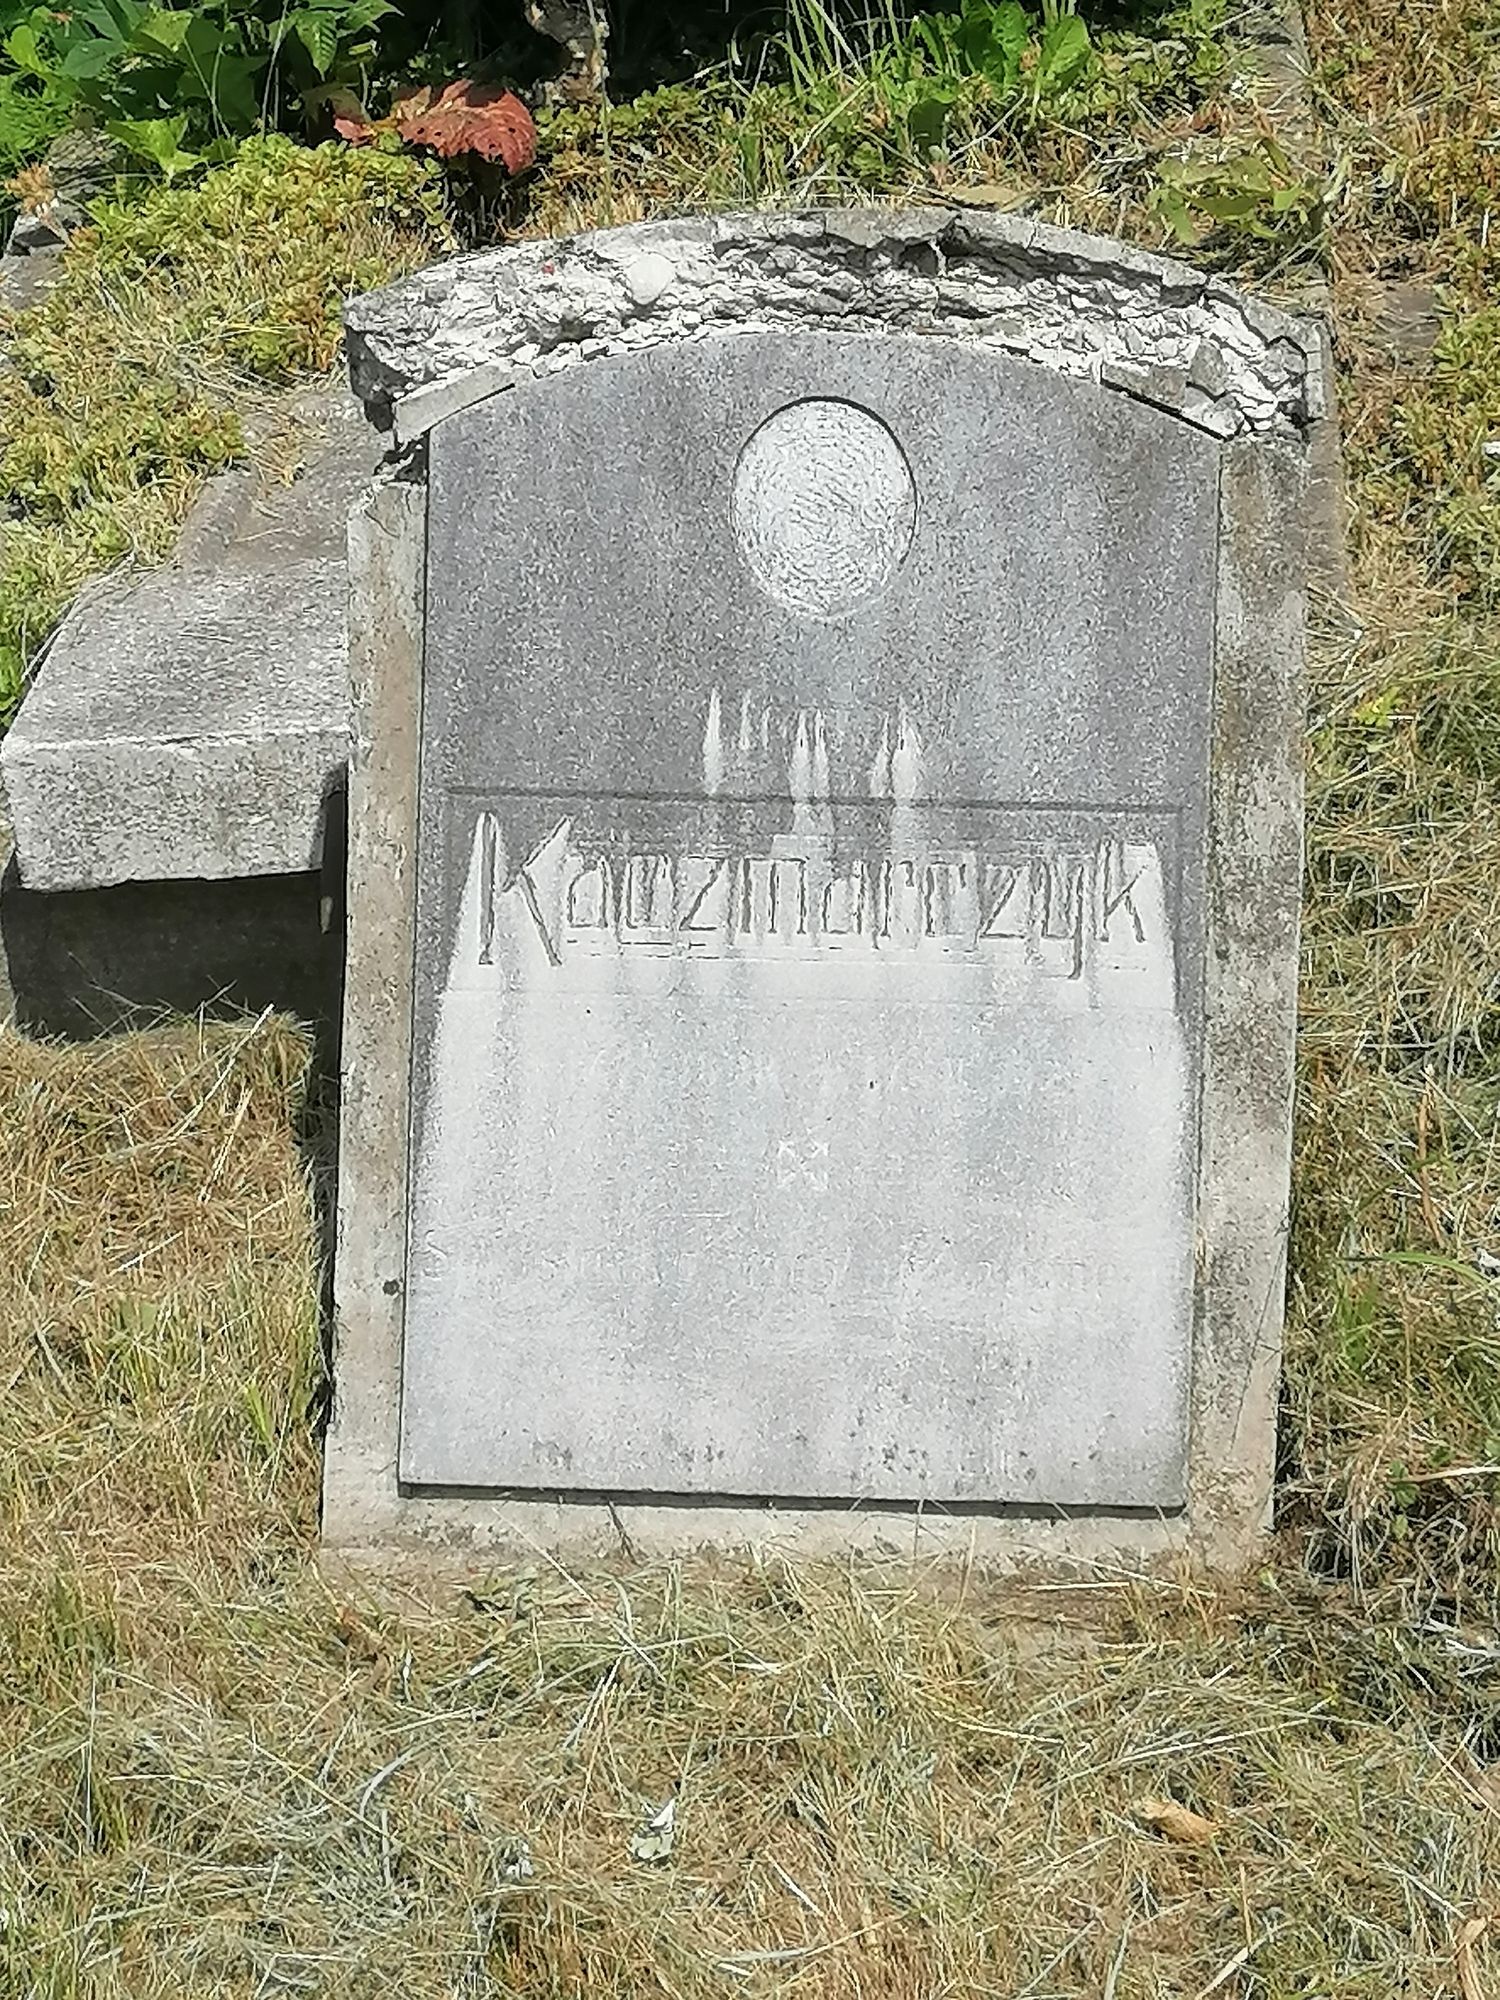 Tombstone of Henryk Kaczmarczyk, cemetery in Karviná Doły, state 2022